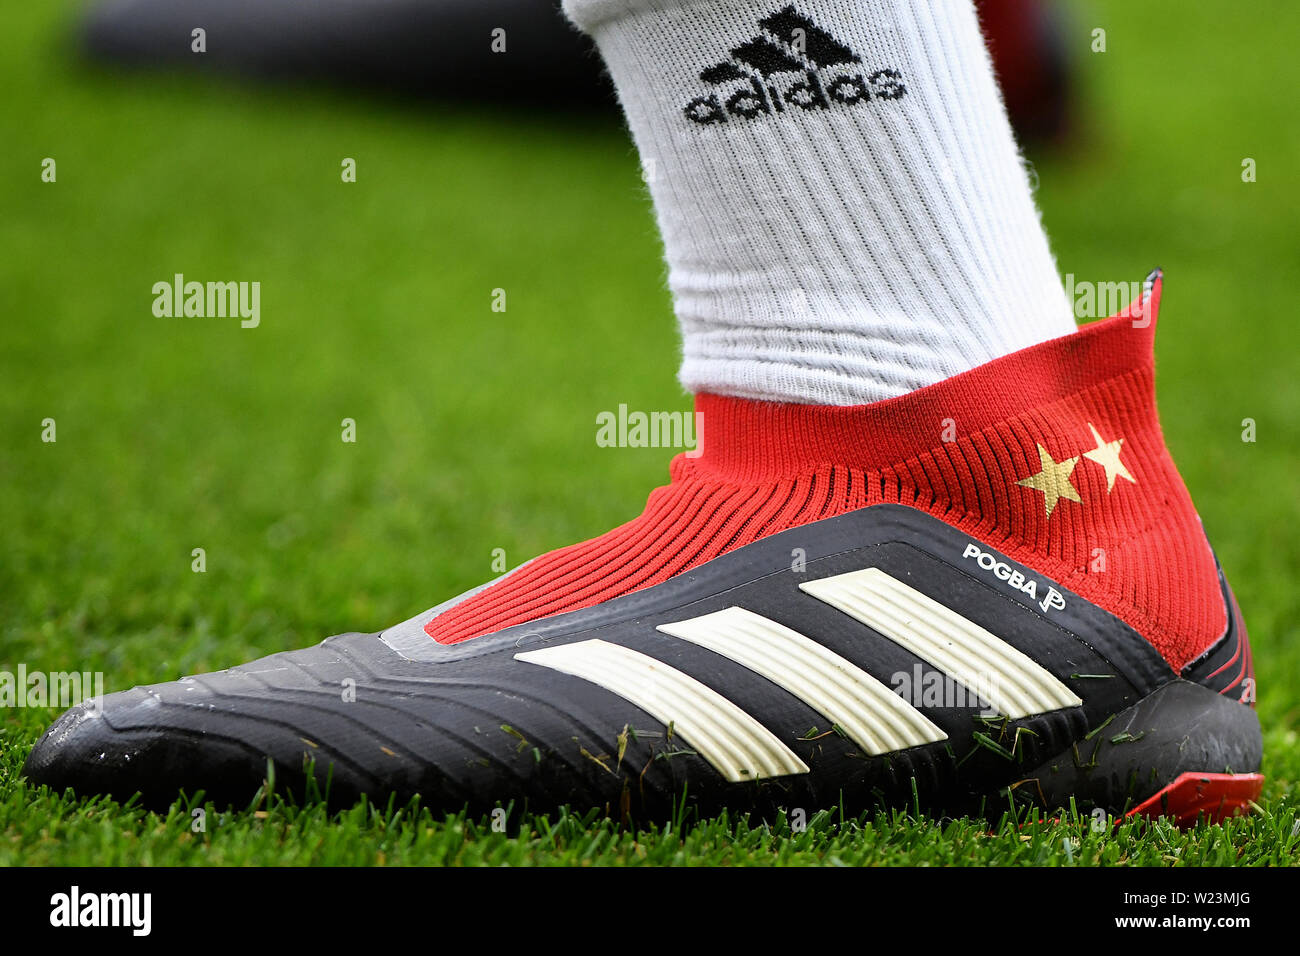 Las Adidas botas de Paul Pogba del Manchester United - Brighton & Hove Albion v Manchester Premier Stadium, Brighton - 19 de agosto de 2018 Fotografía de stock - Alamy